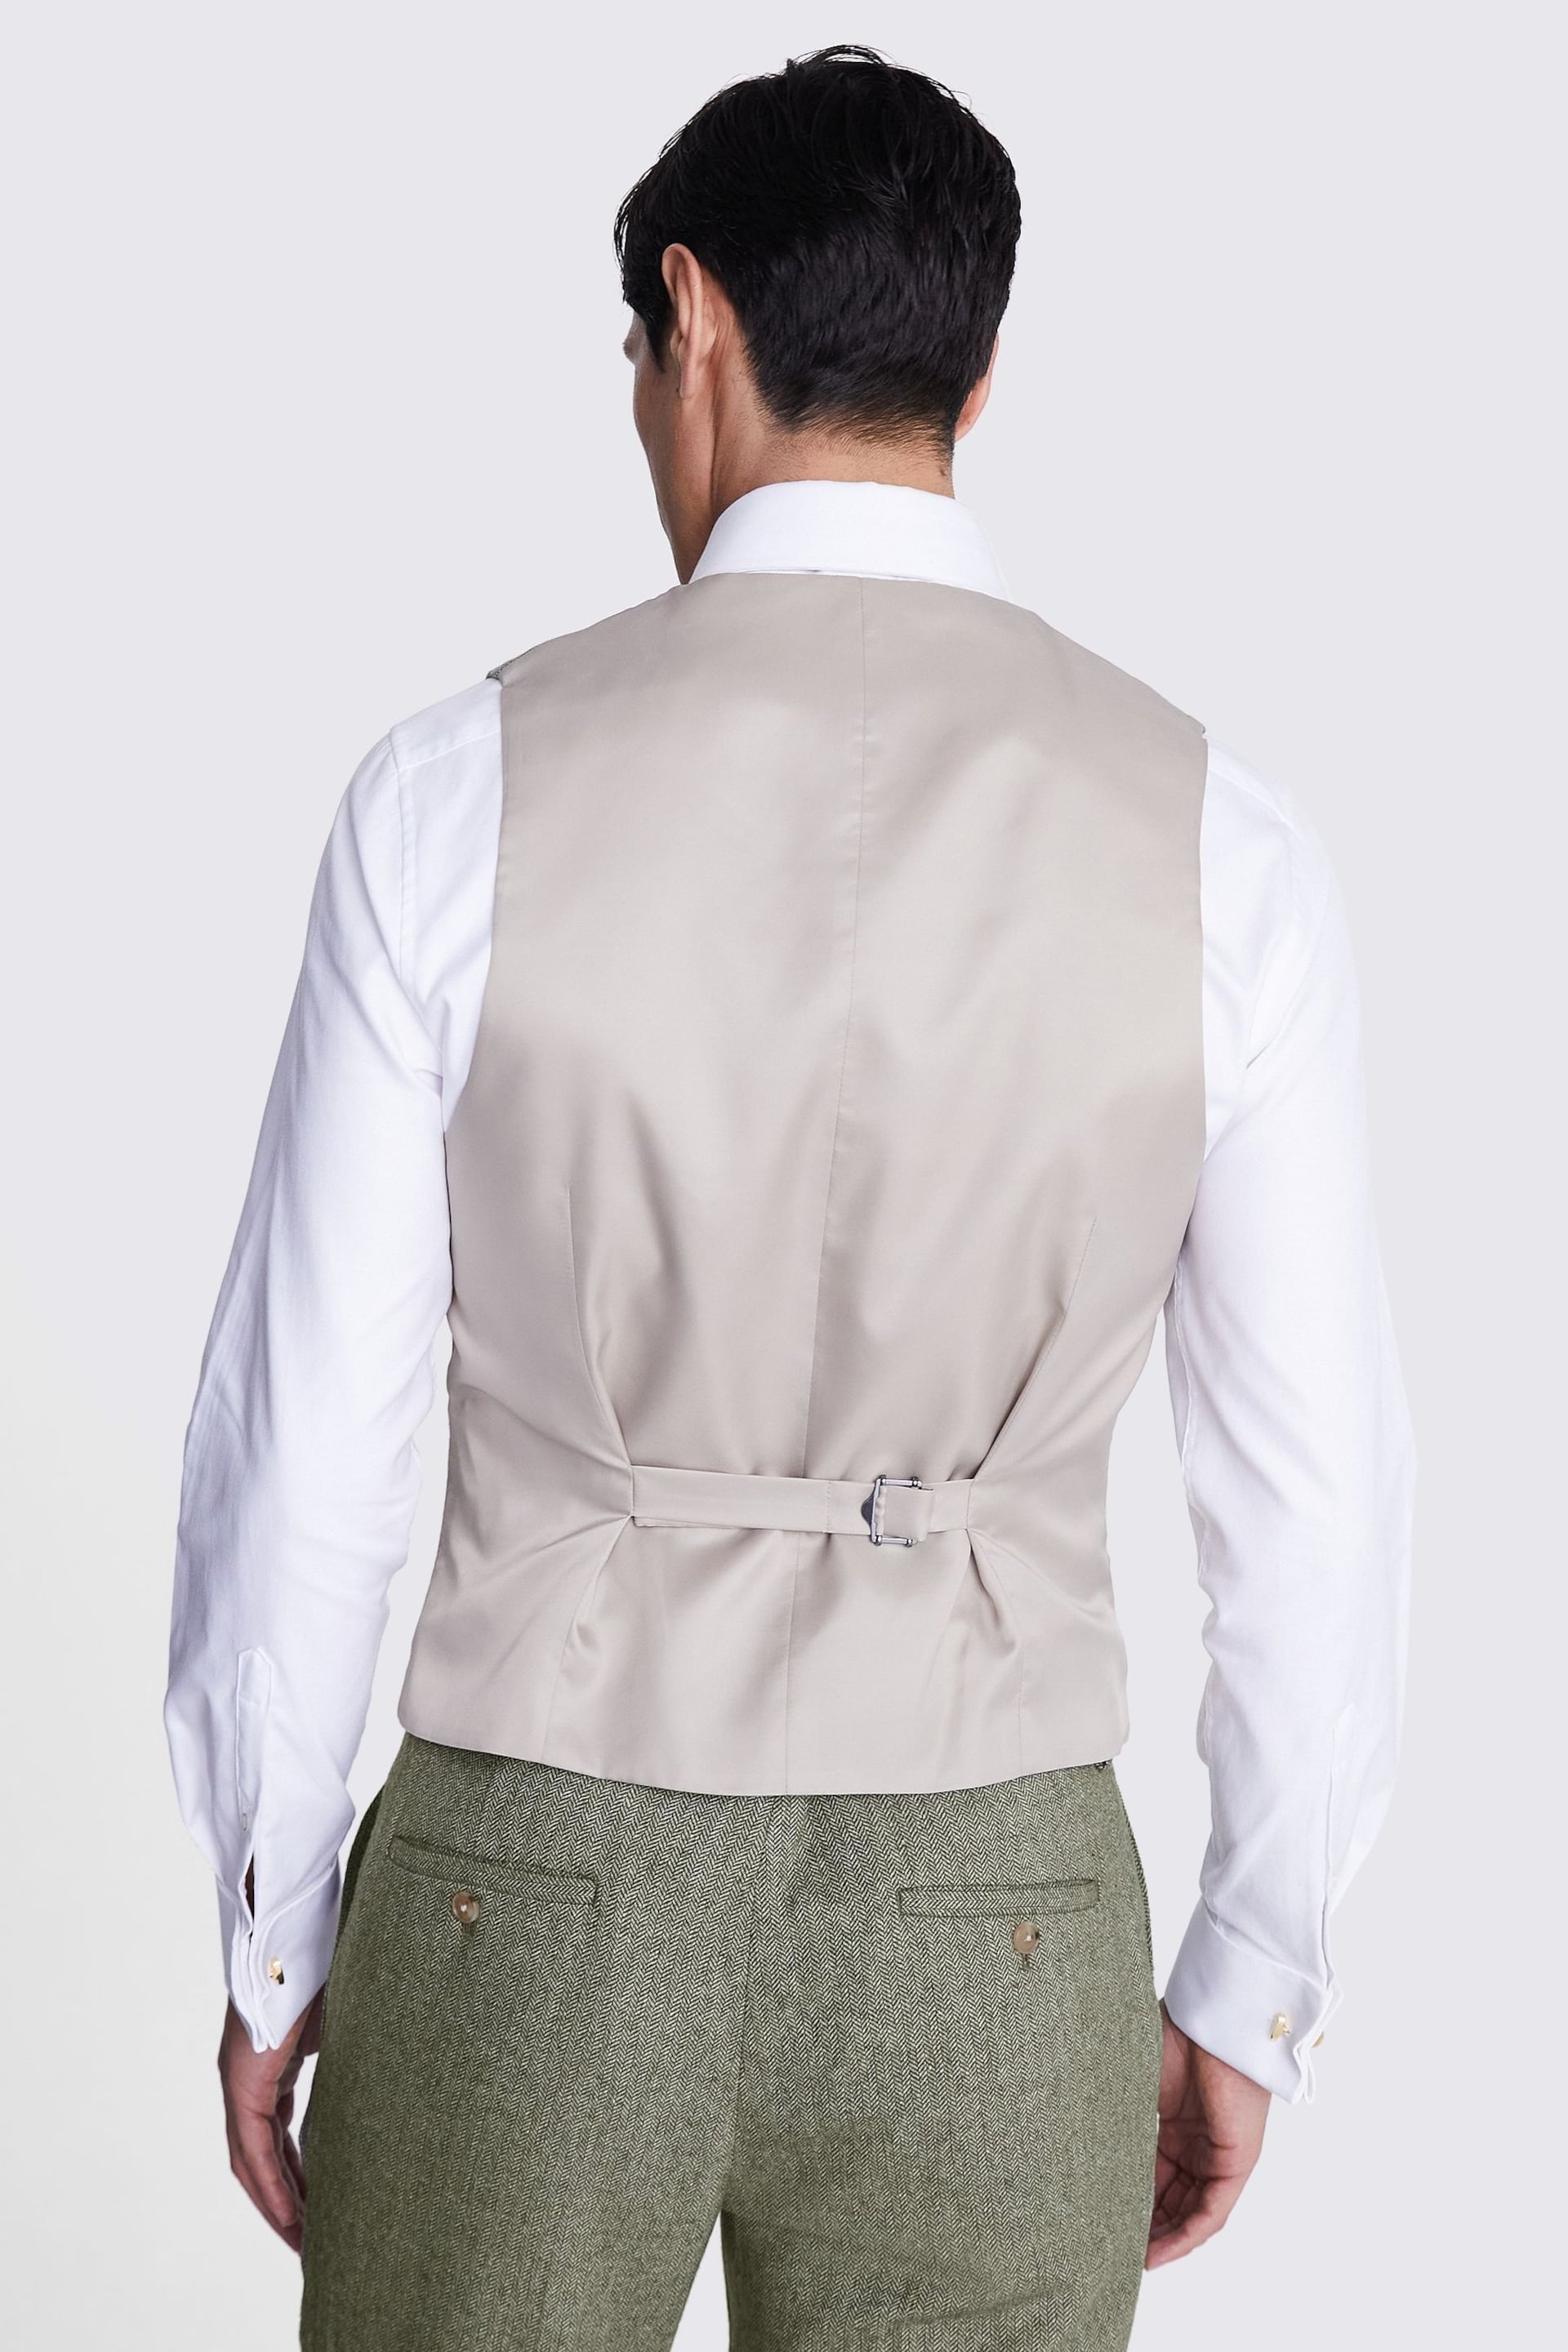 MOSS Slim Fit Green Sage Herringbone Tweed Waistcoat - Image 3 of 3